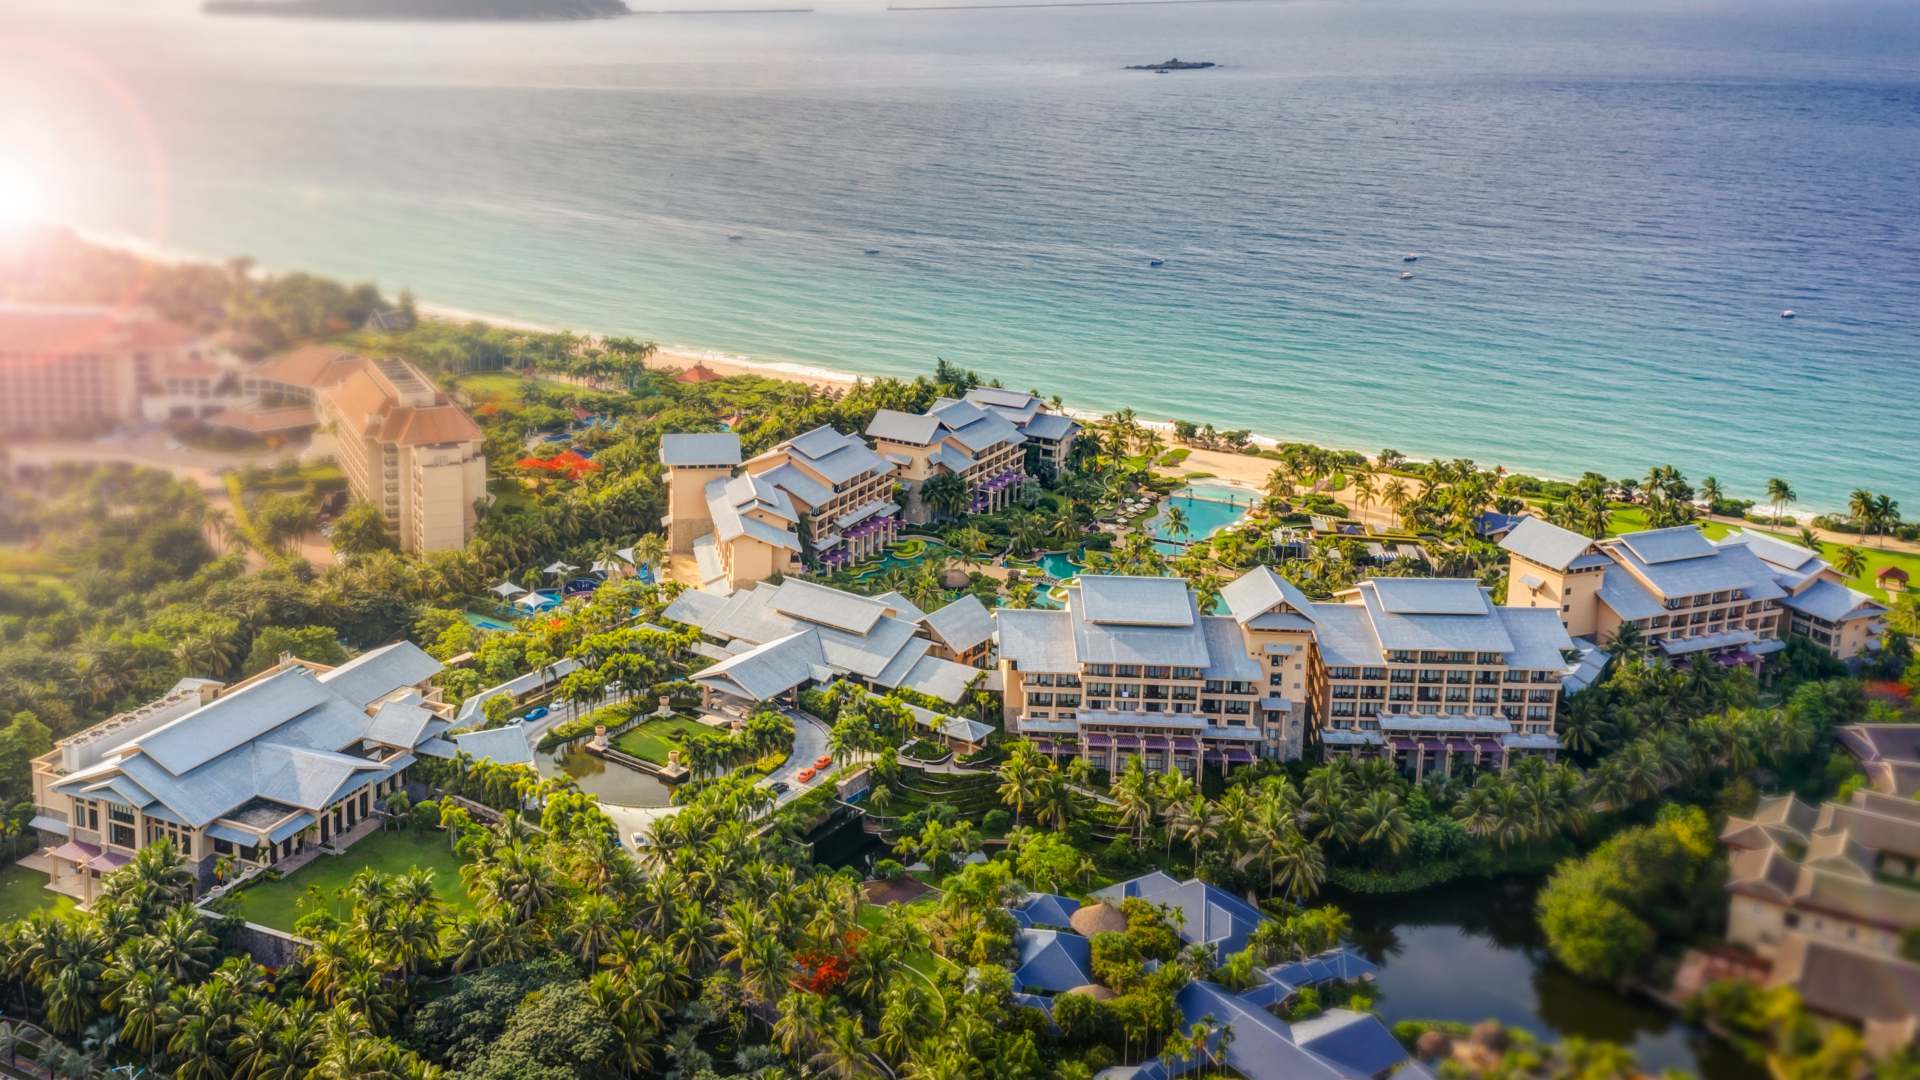 Photo of Hilton Sanya Yalong Bay Resort & Spa, Sanya, China